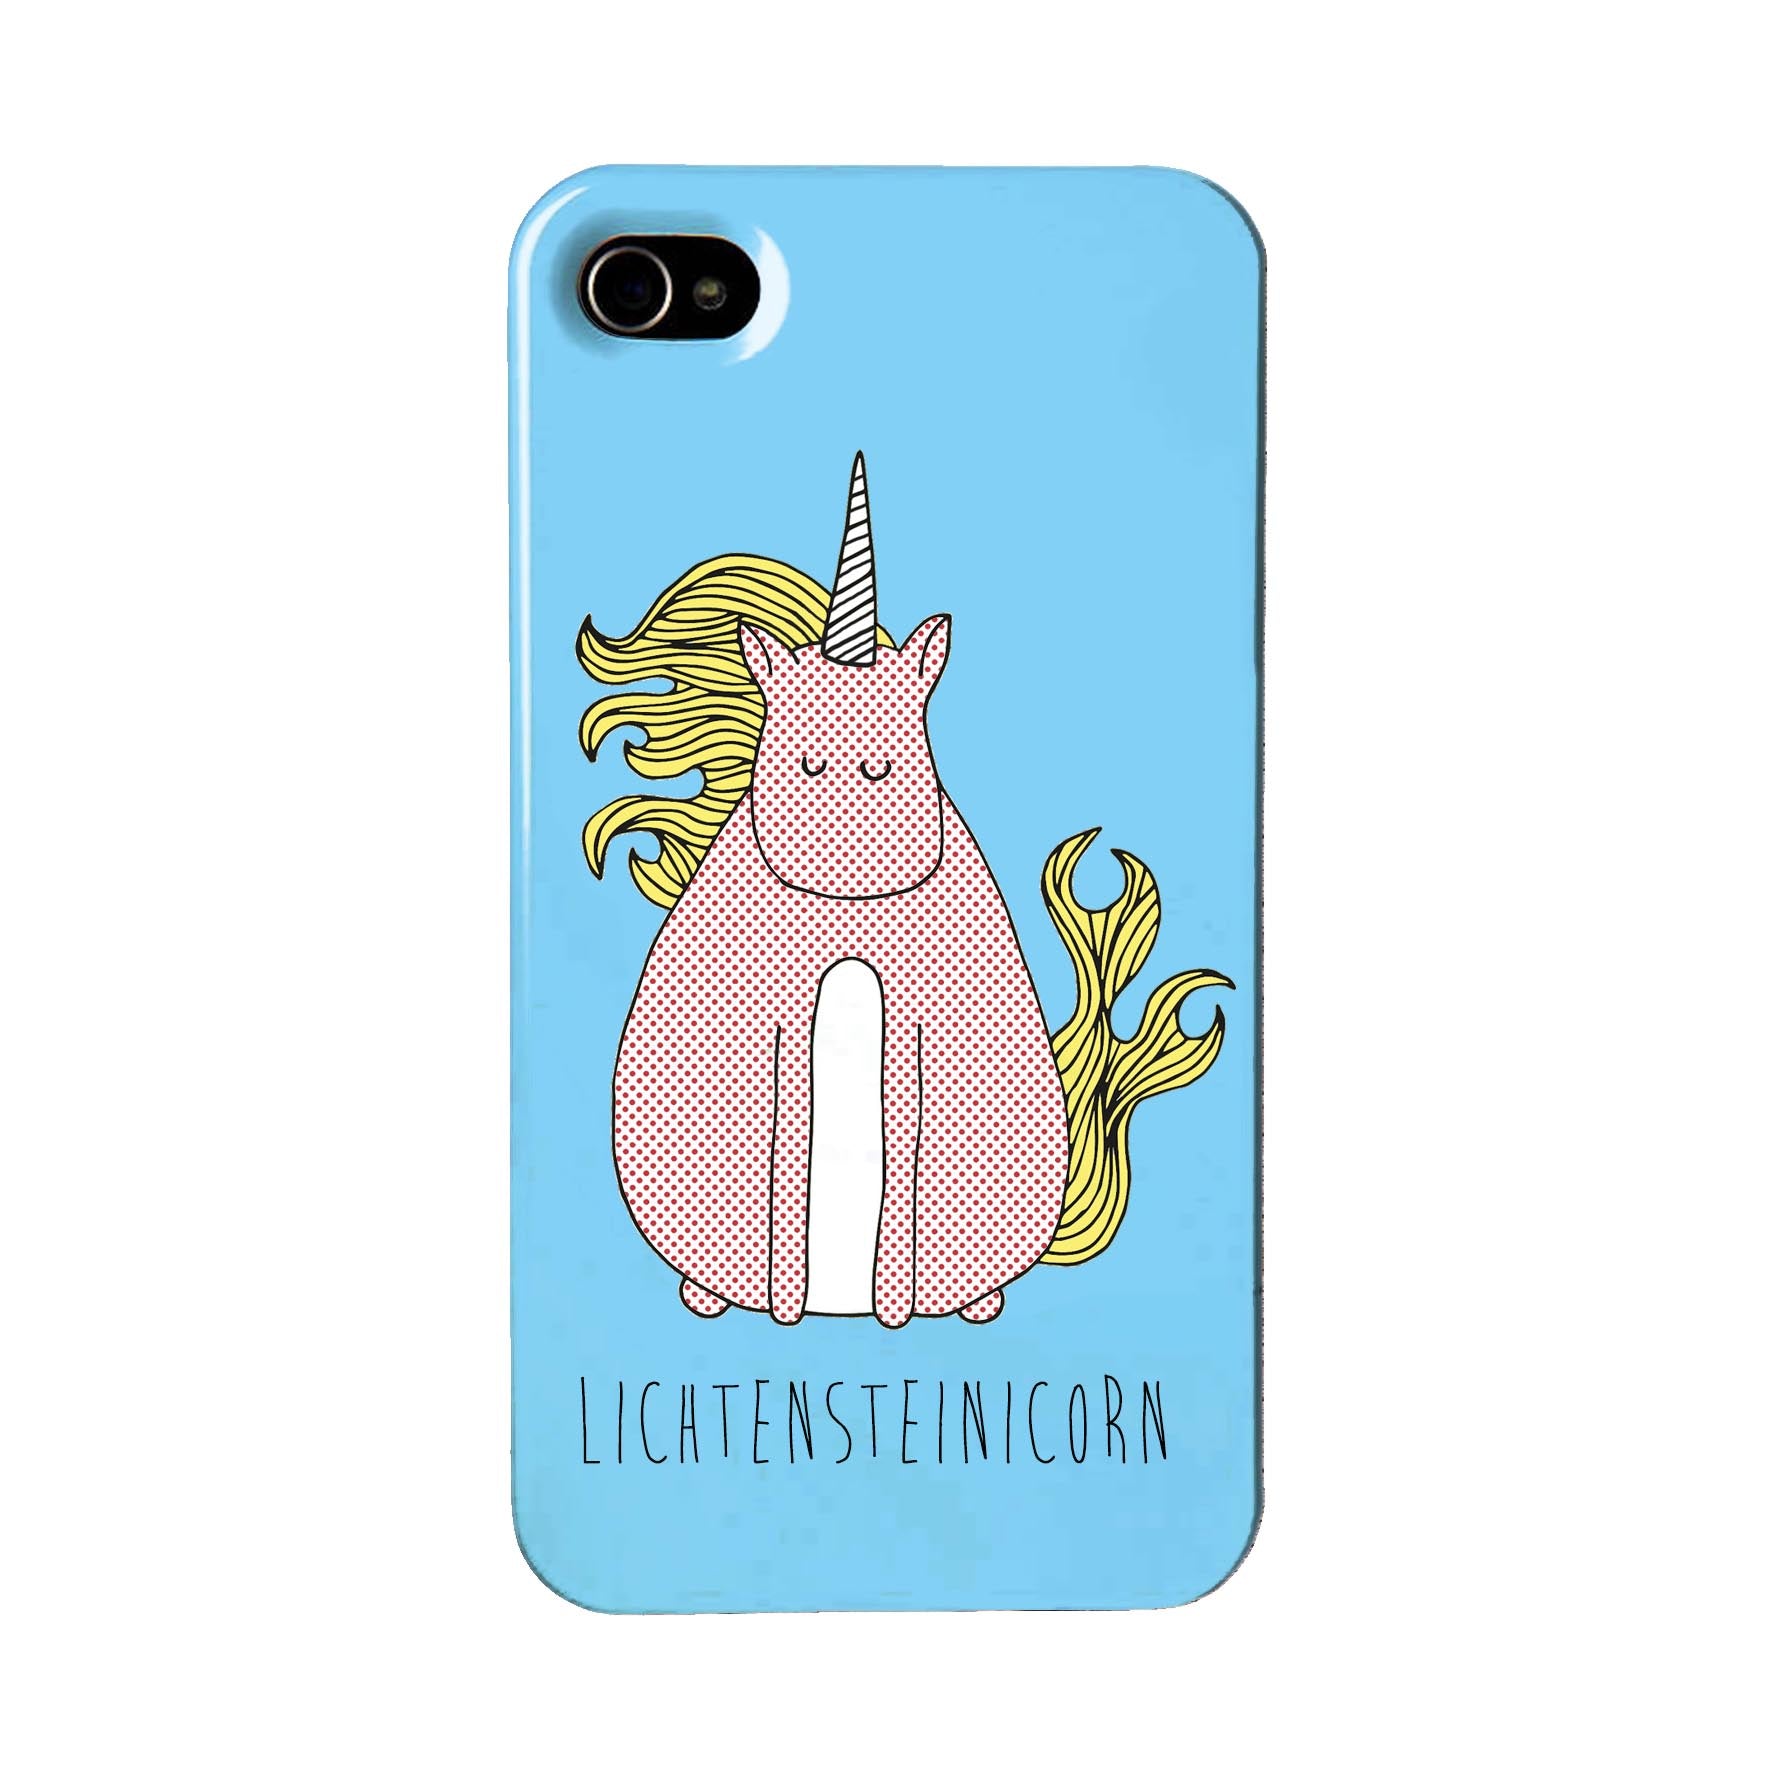 Blue phone case with an illustration of Lichtenstein unicorn